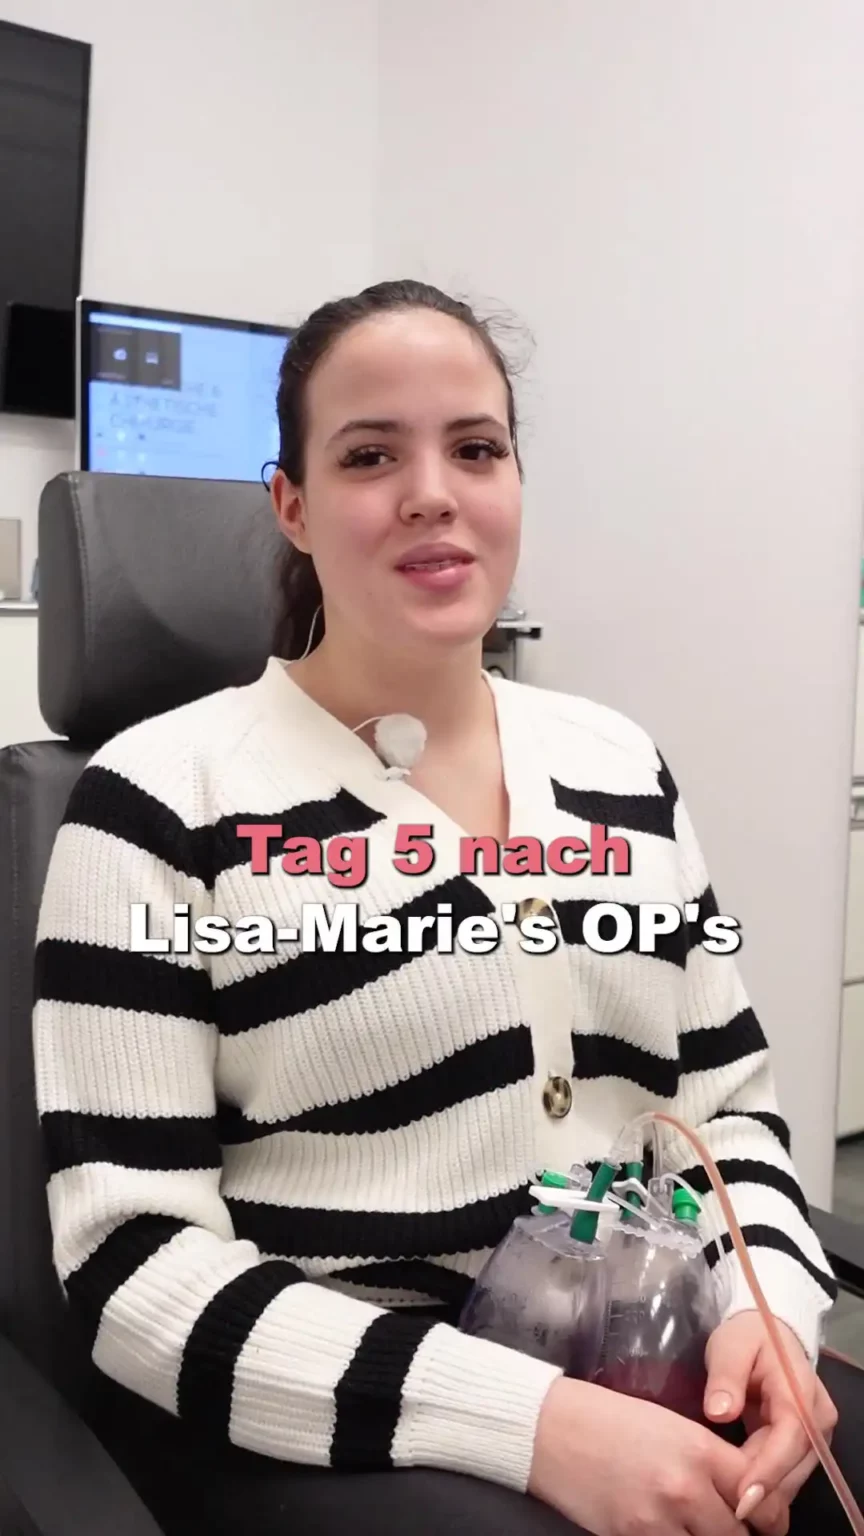 Aufnahme einer Patientin bei der Nachuntersuchung mit dem Text "Tag 5 nach Lisa-Marie's OP's".